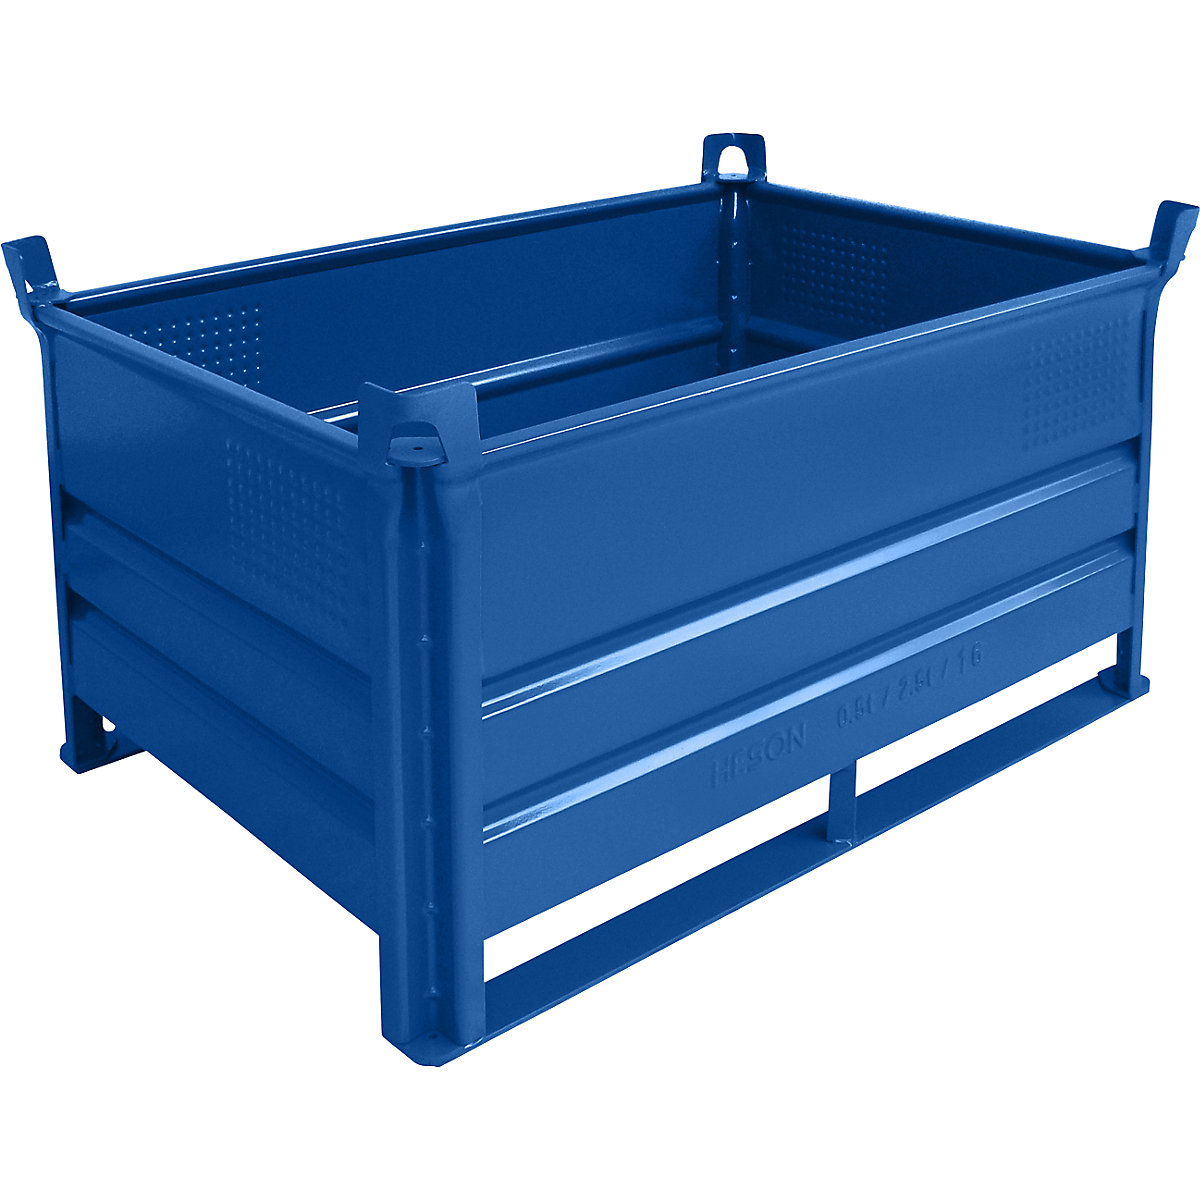 Heson Stapelbehälter mit Kufen, LxB 1200 x 800 mm, Traglast 2000 kg, blau, ab 1 Stk